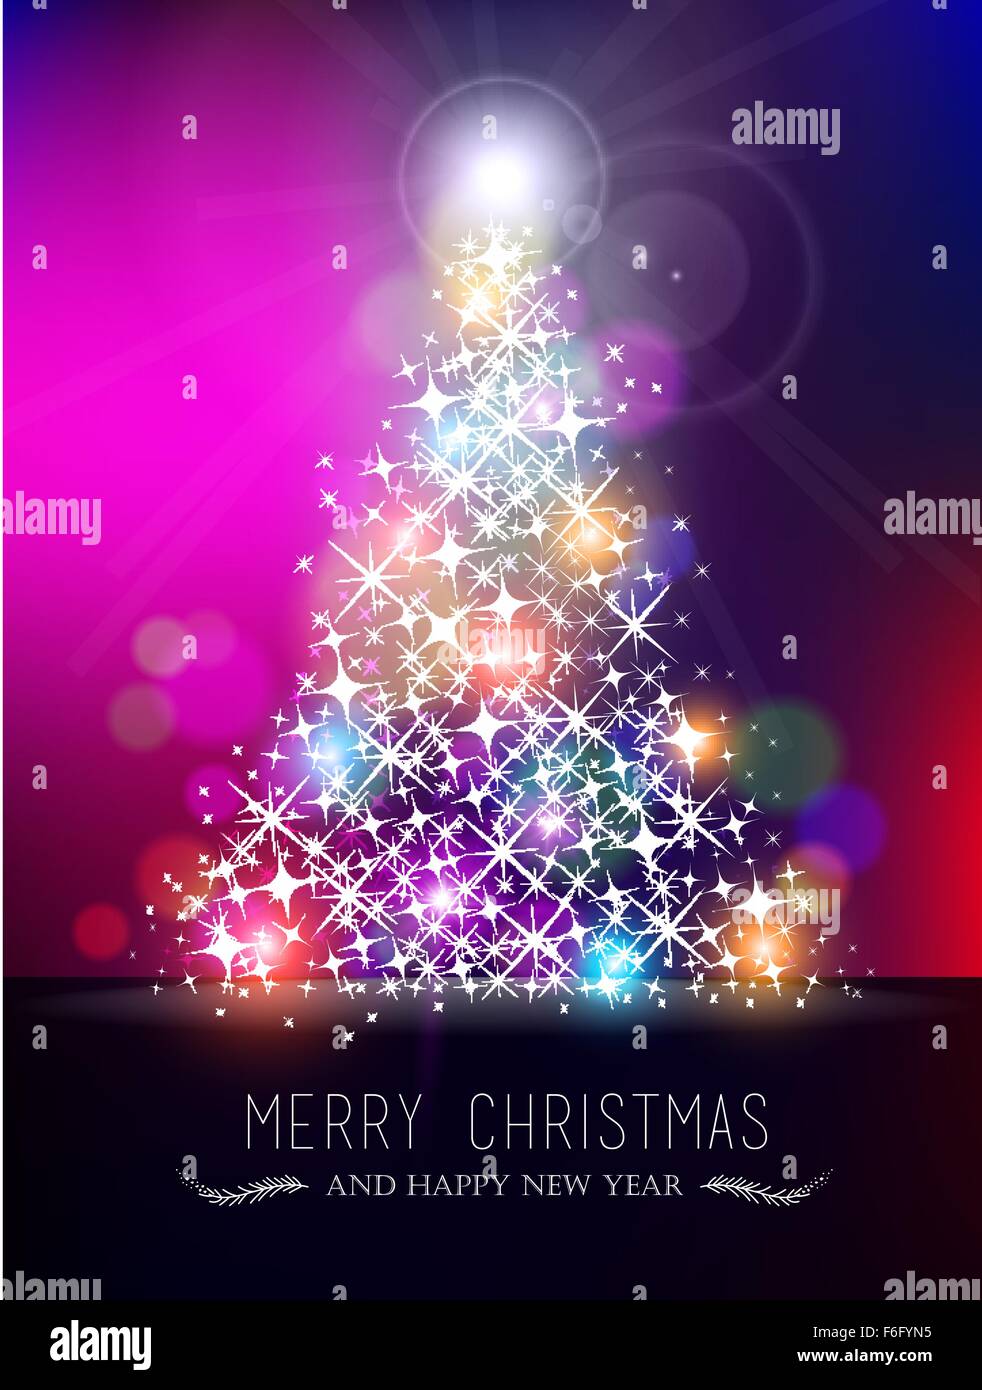 Frohe Weihnachten guten Rutsch Bokeh Stil Grußkarte Design. Xmas Kiefer Baumform mit funkeln Sterne gemacht und bunte verwischt Stock Vektor